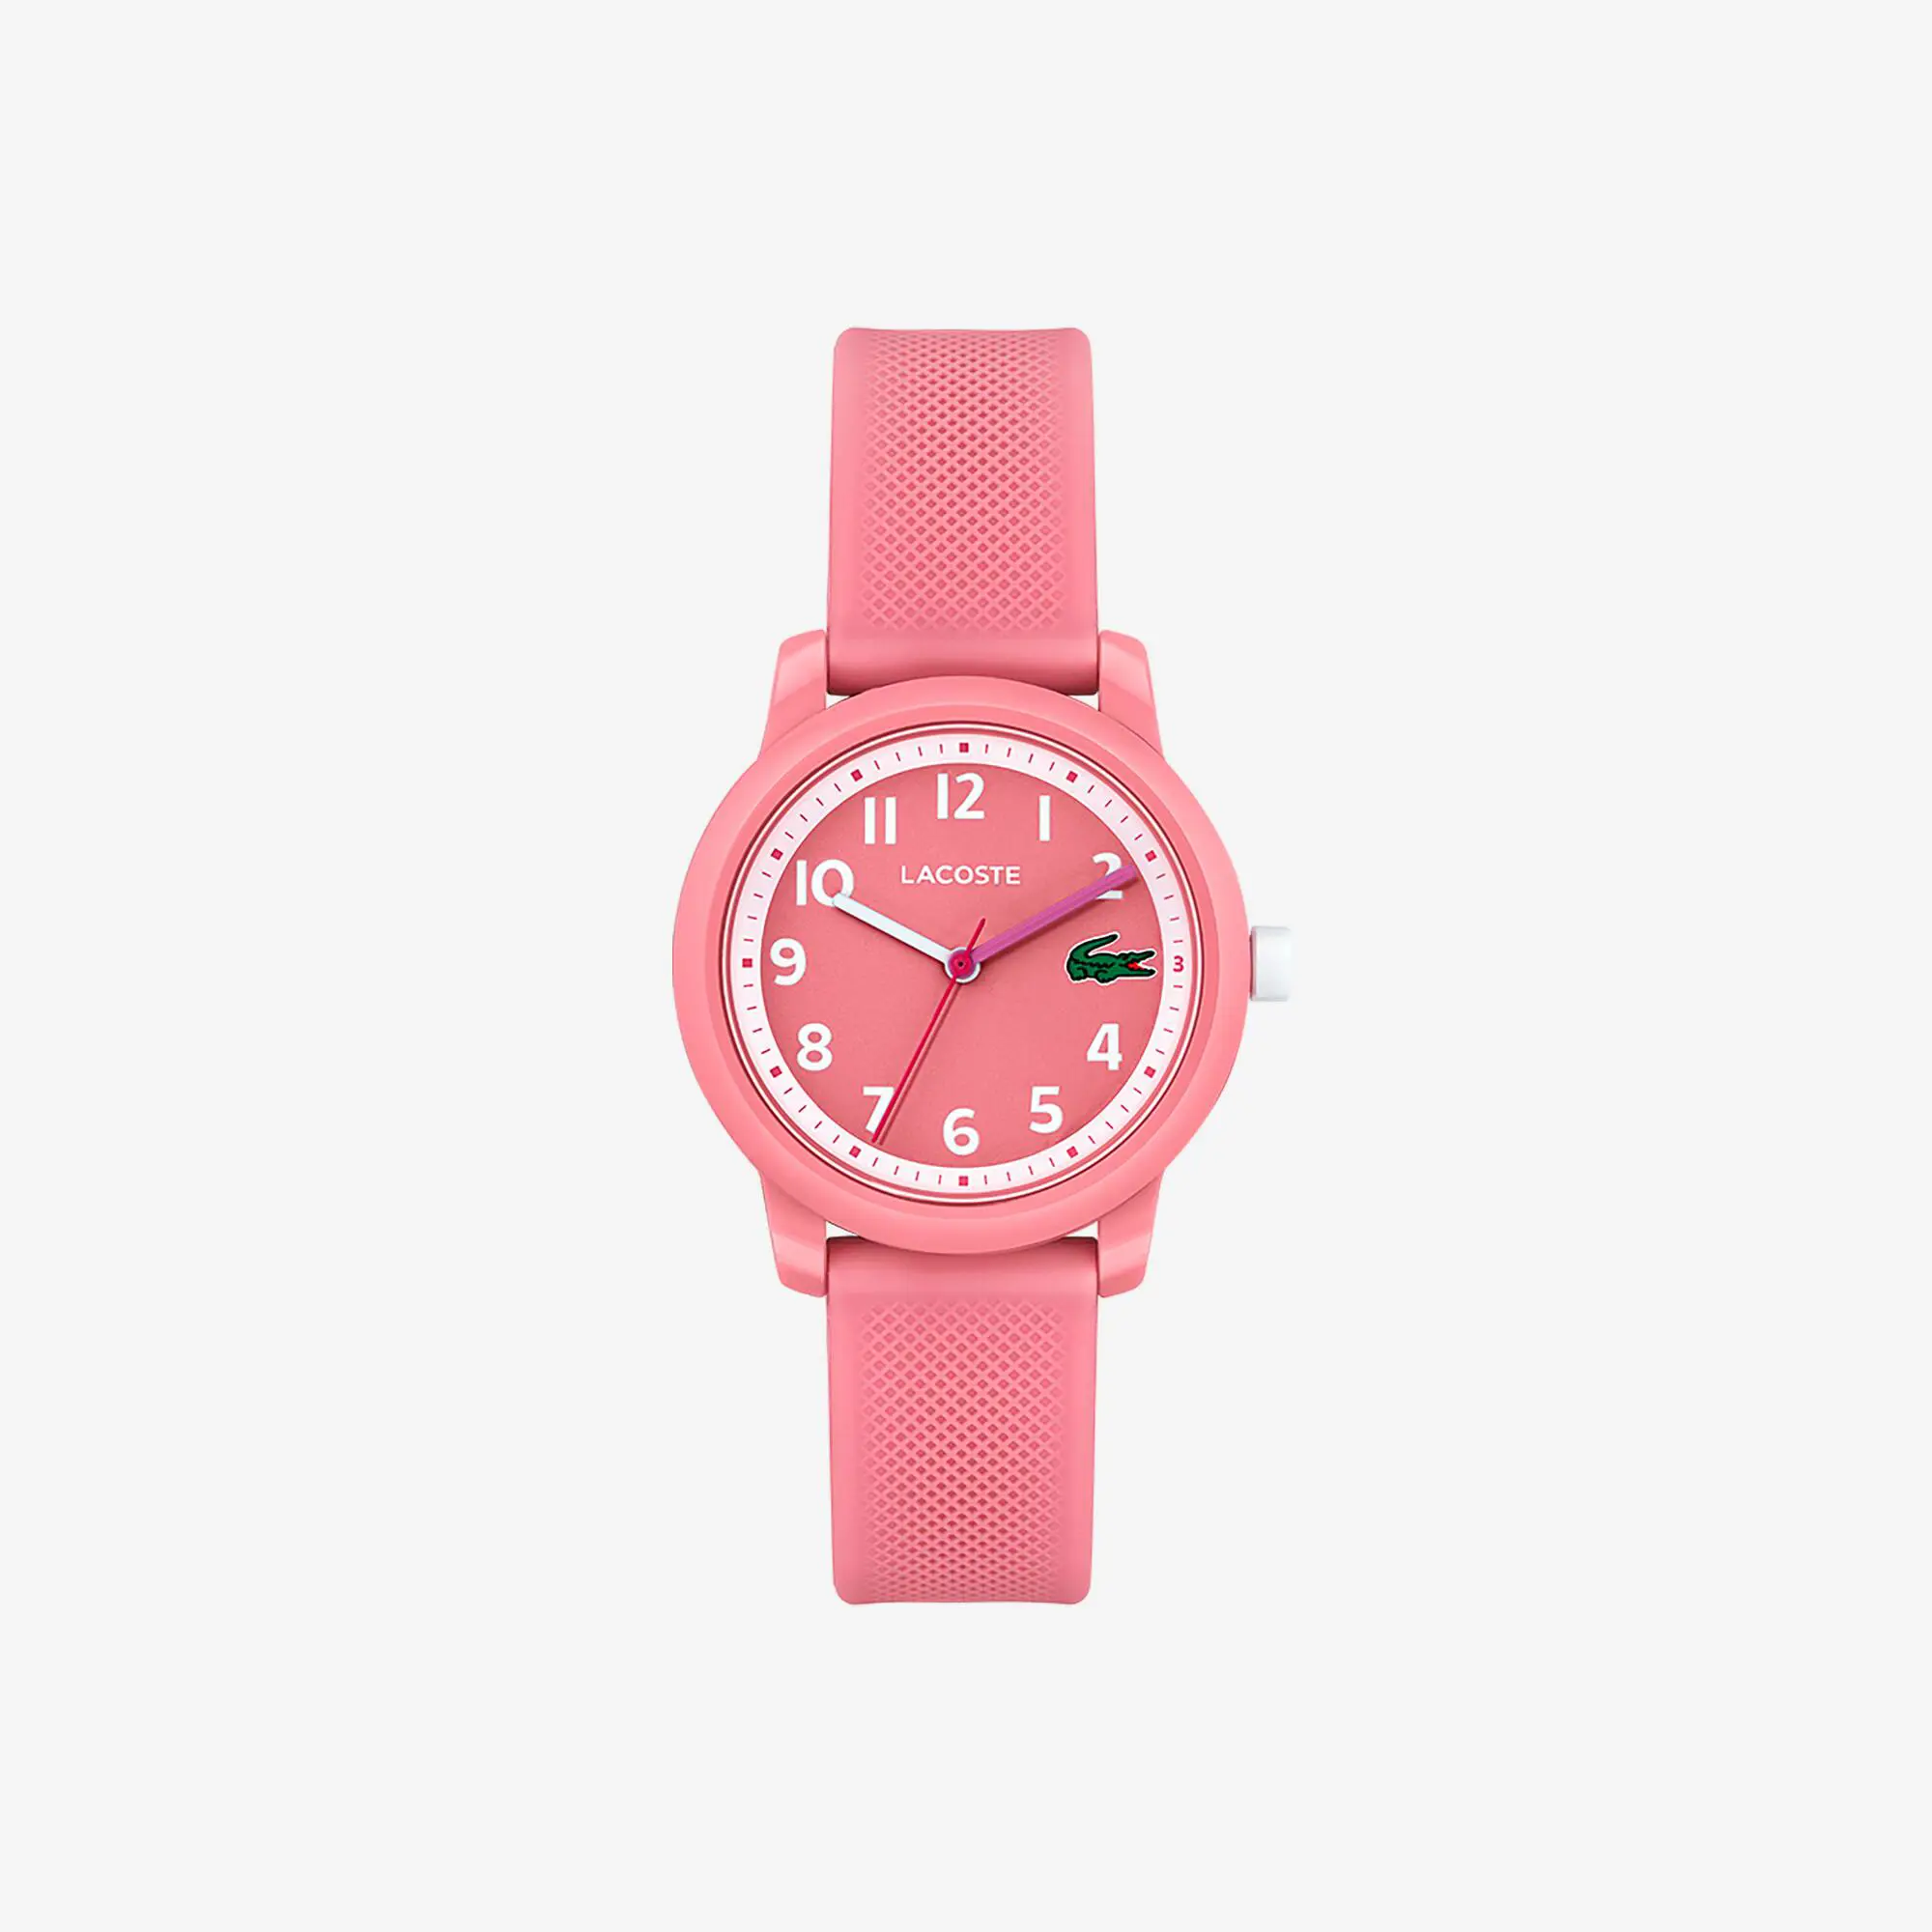 Lacoste Relógio Lacoste.12.12 com pulseira de silicone rosa para criança. 2